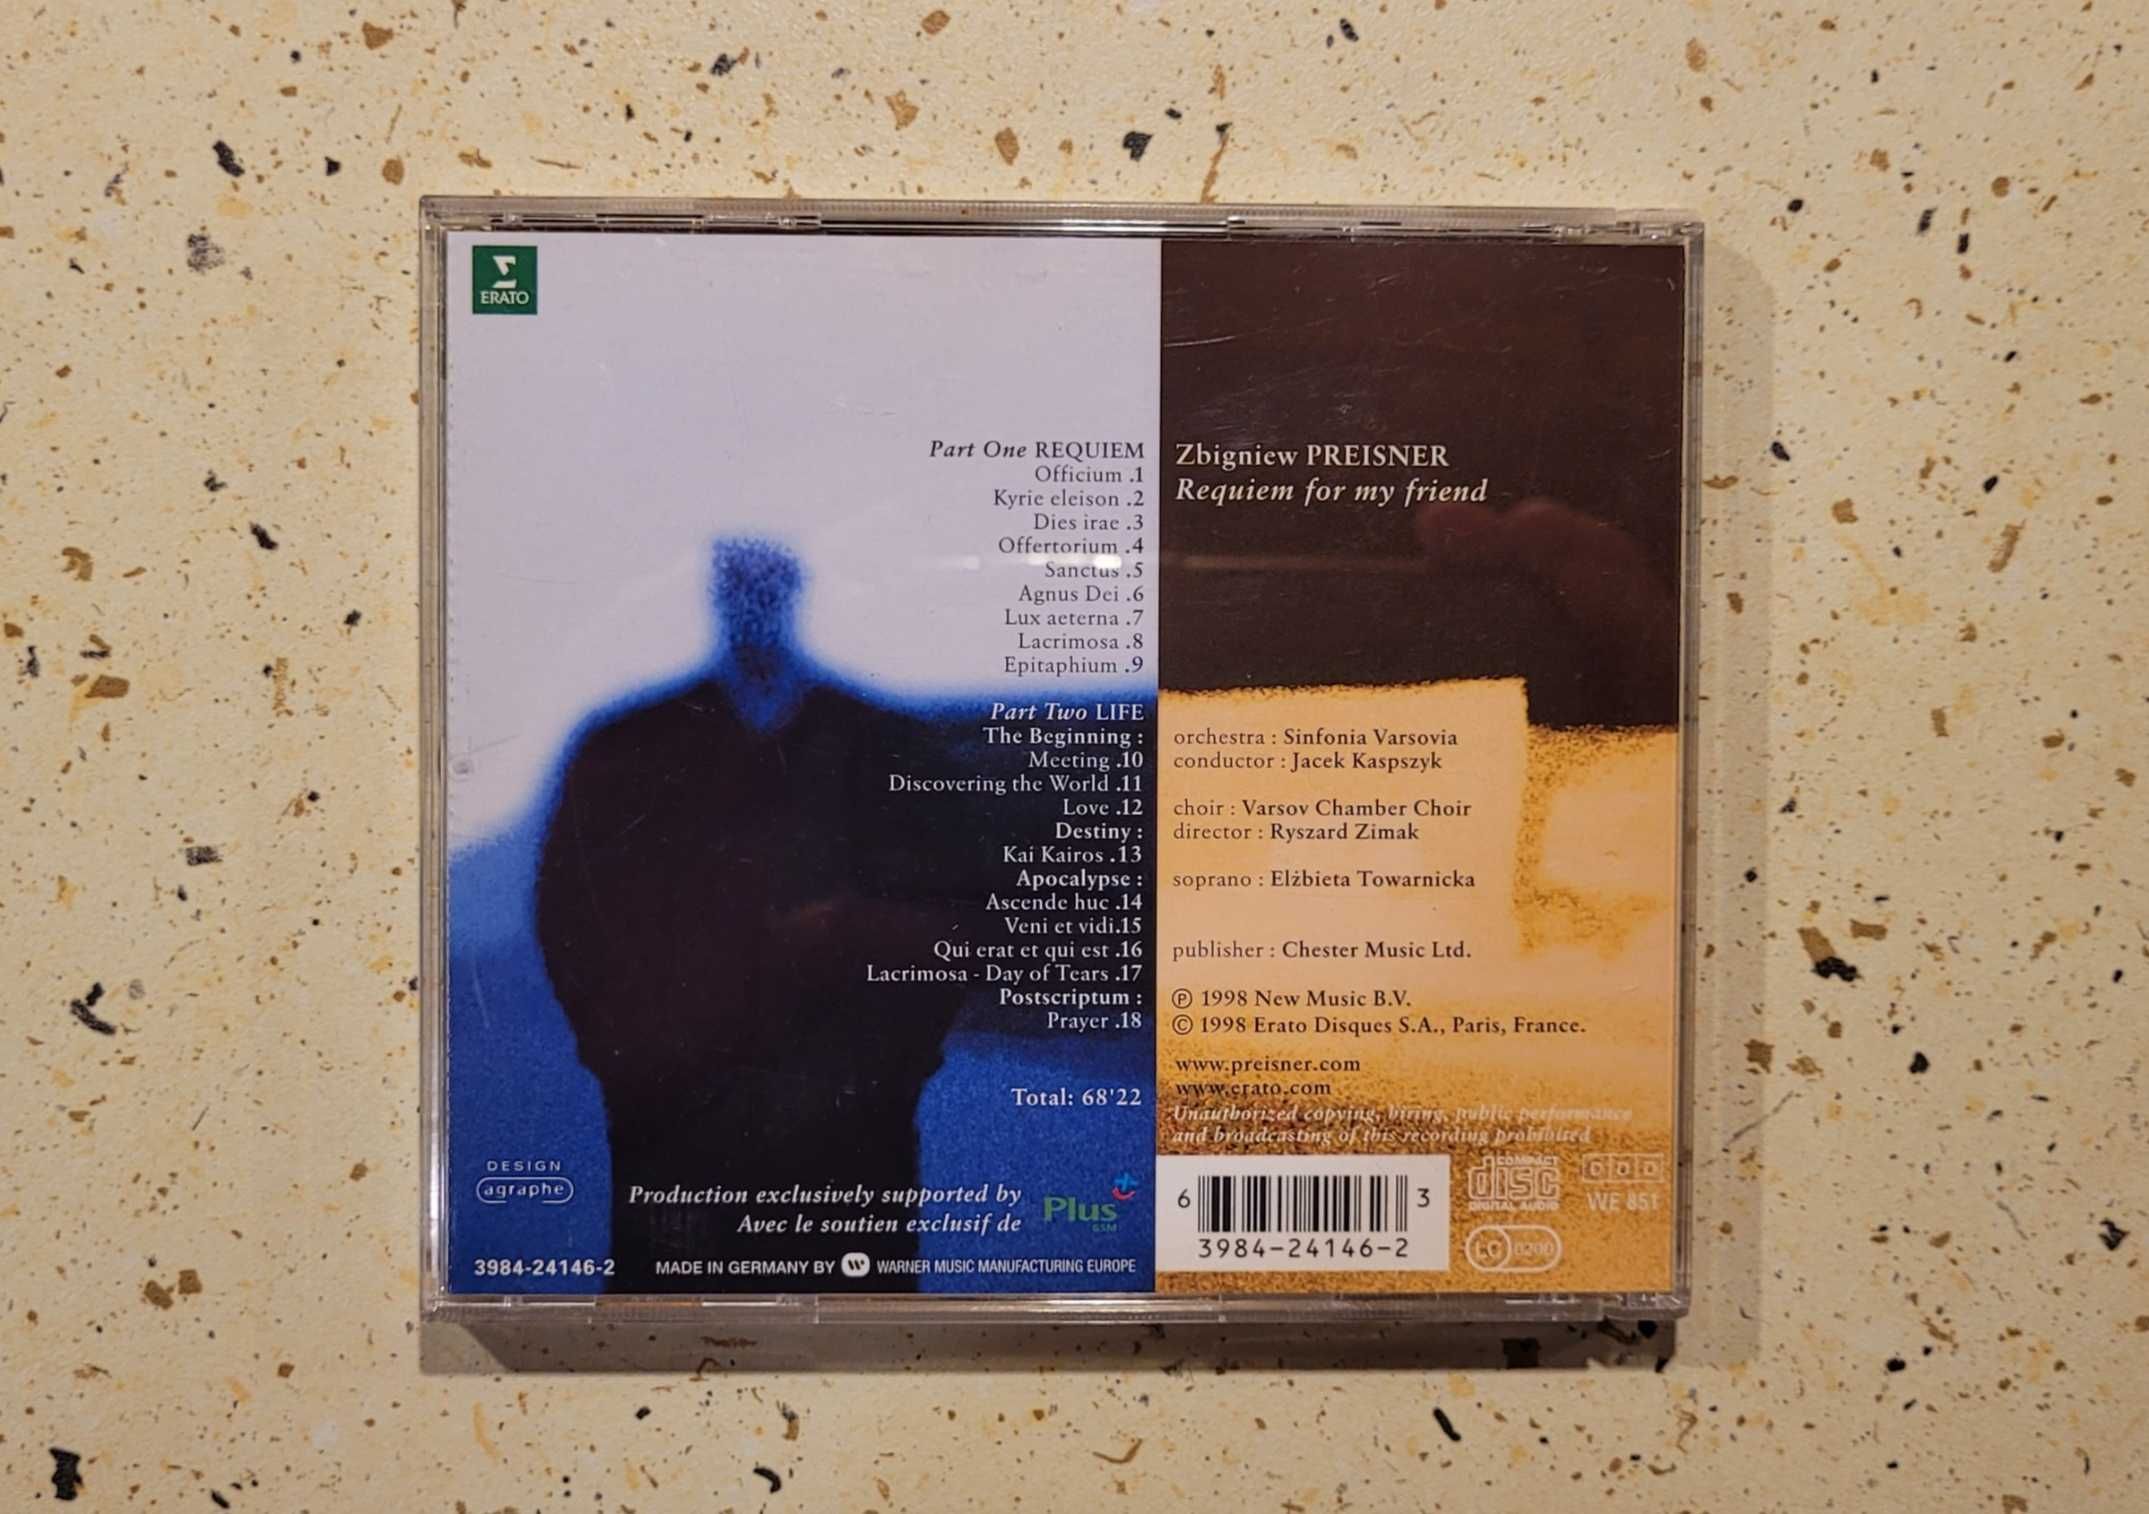 CD - Zbigniew Preisner - Requiem for my friend